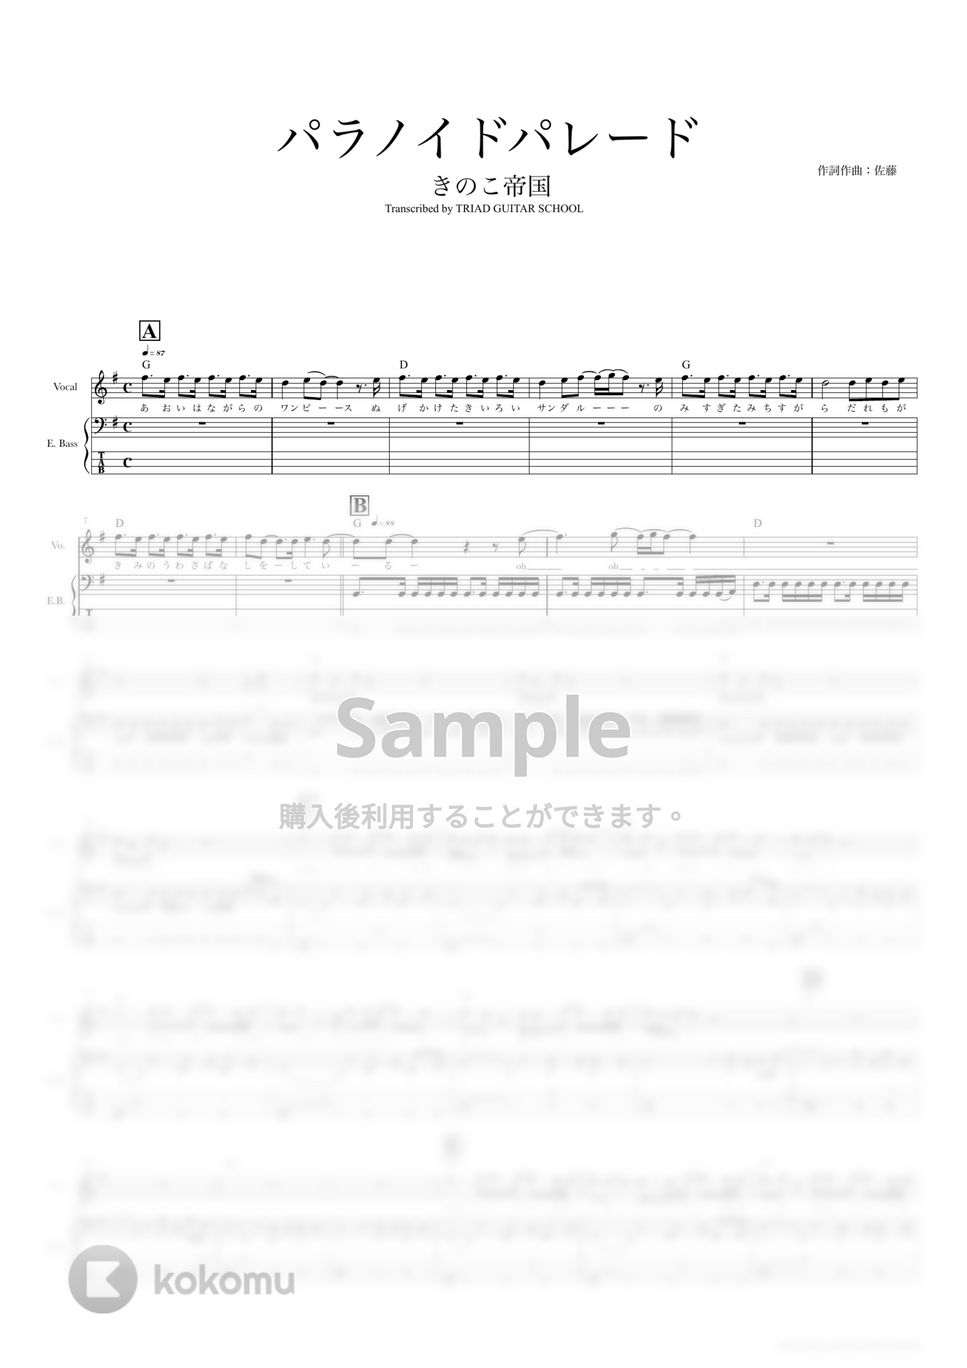 きのこ帝国 - パラノイドパレード (ベーススコア・歌詞・コード付き) by TRIAD GUITAR SCHOOL